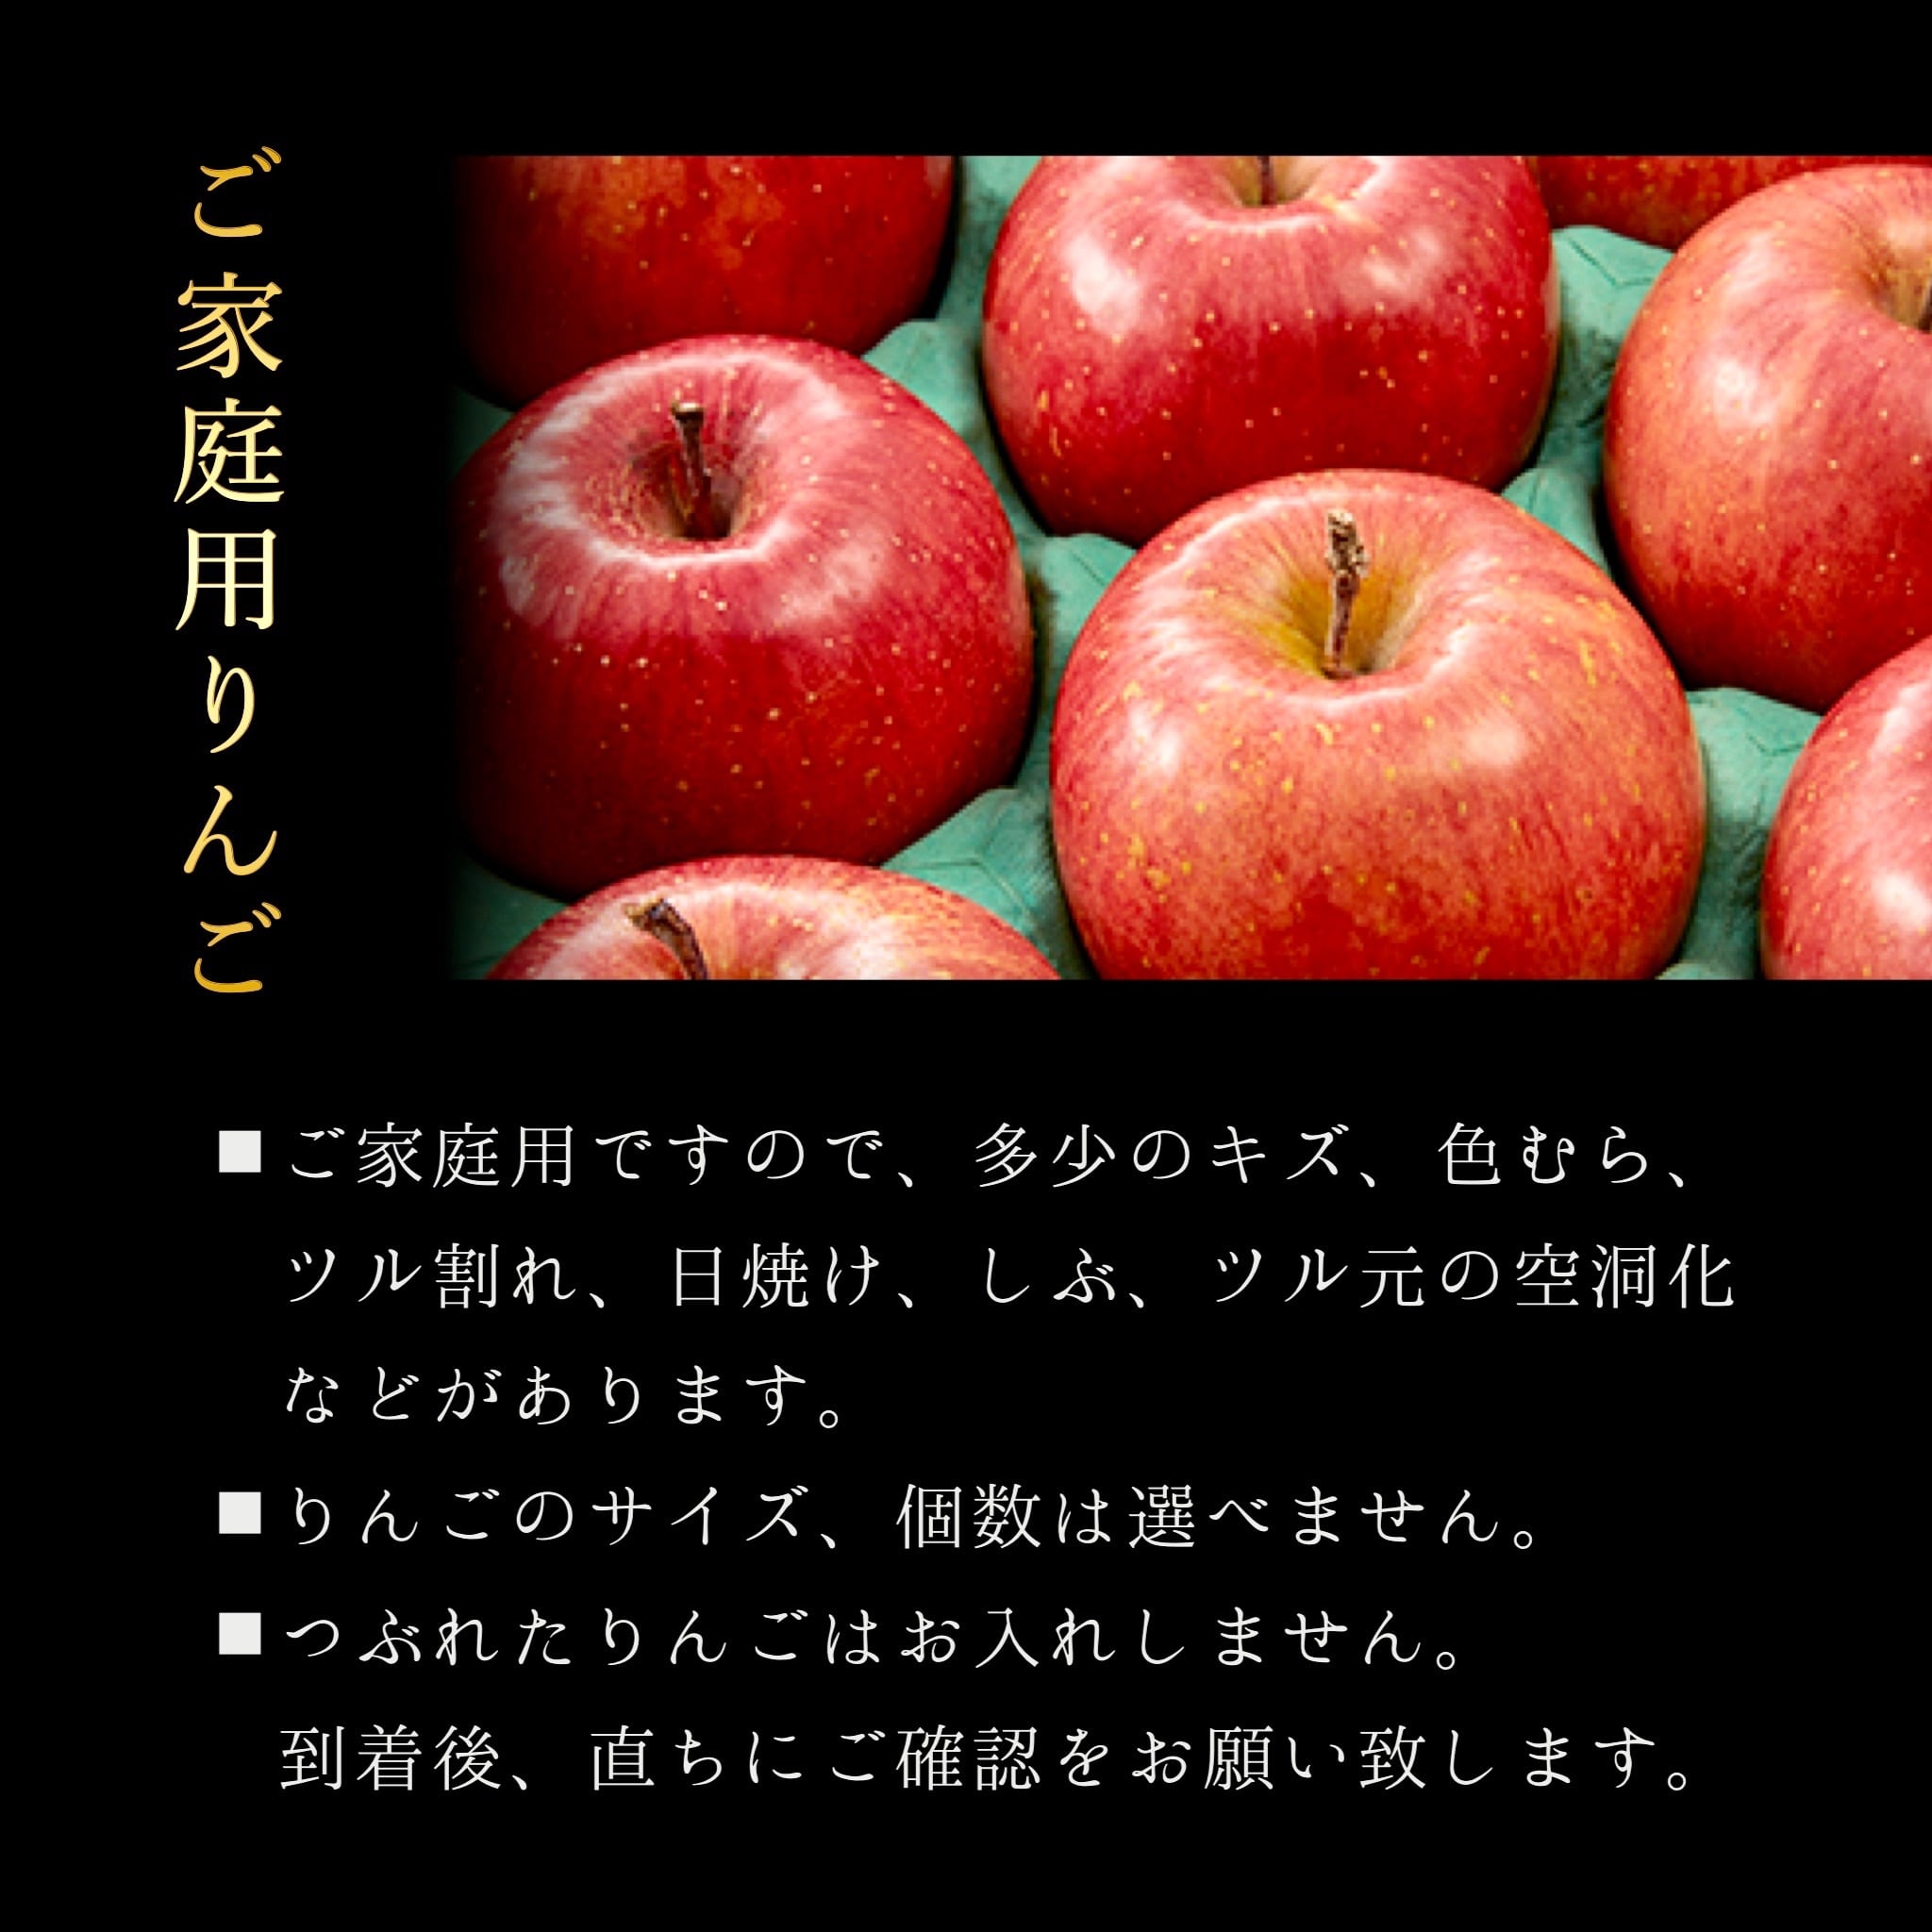 大人気の 専用 その他 りんご様 Dai 1 Kurai Kakutoku